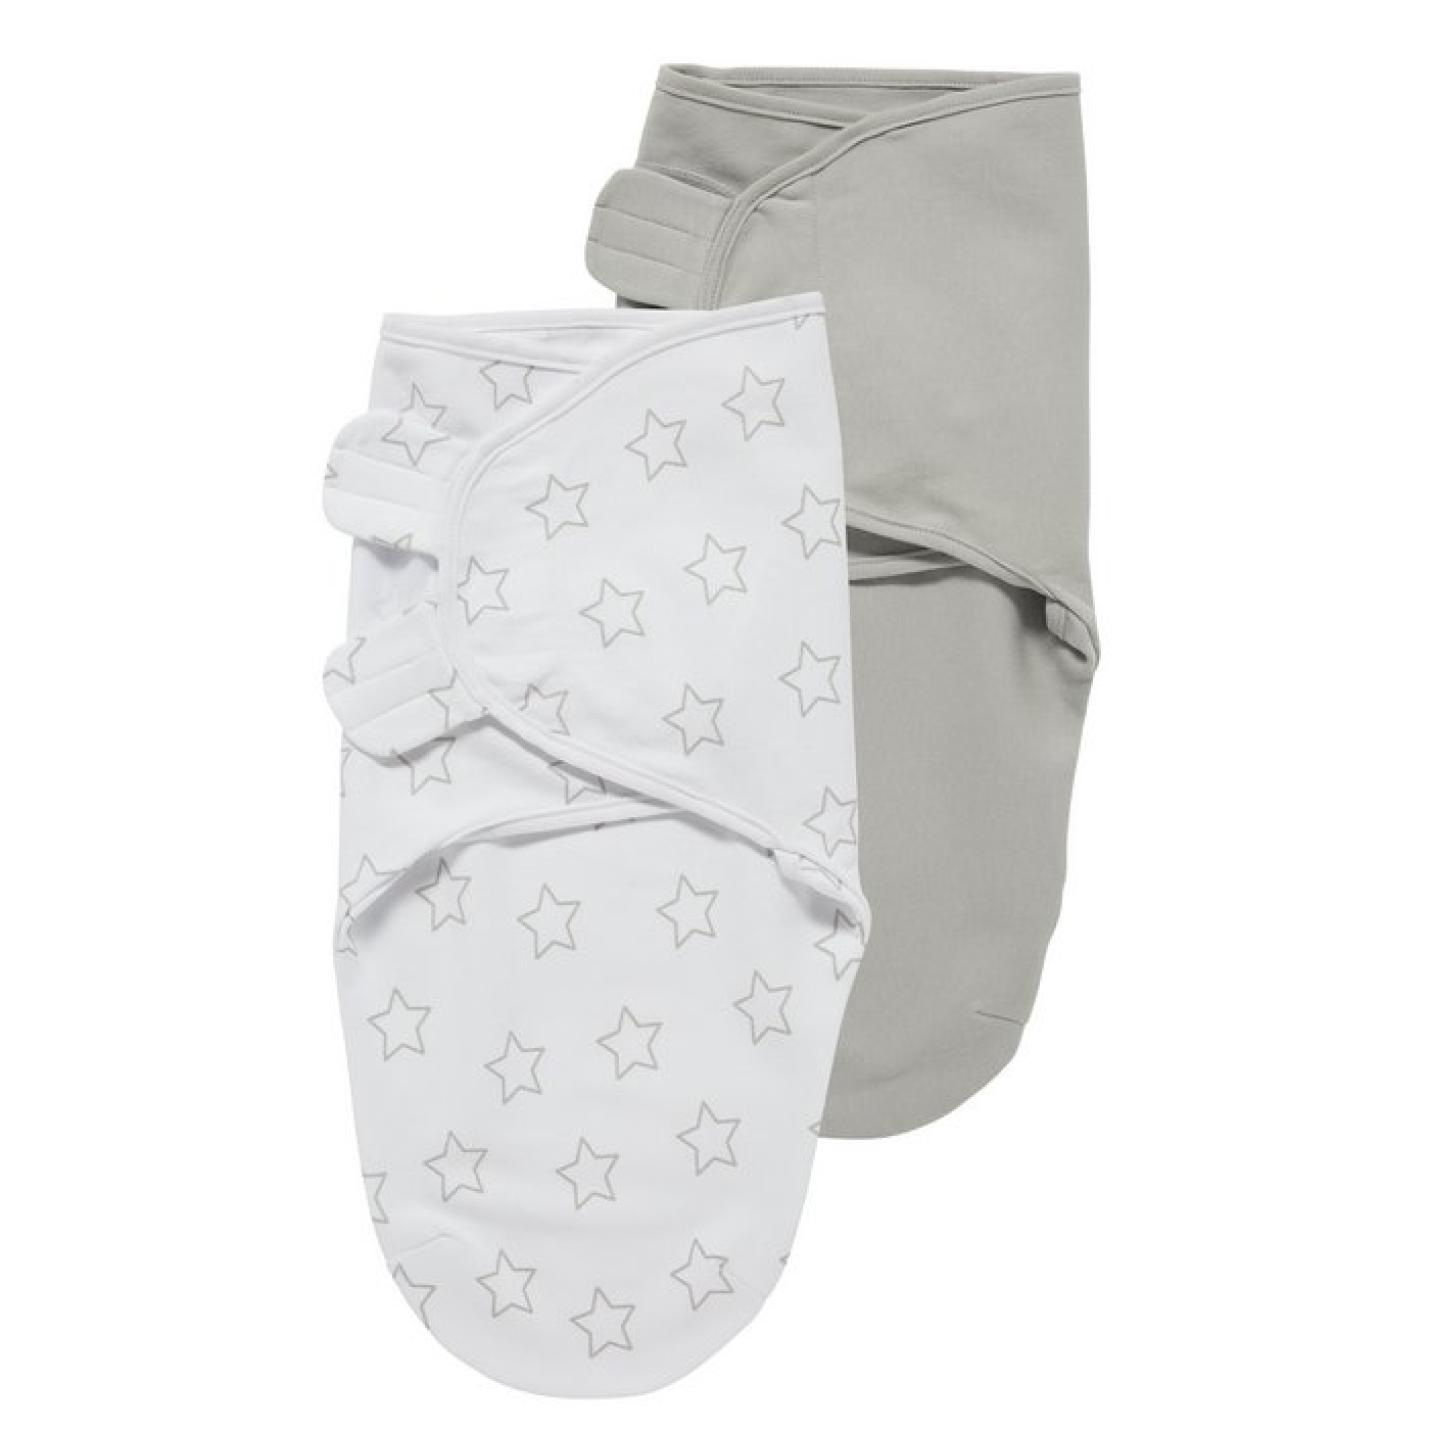 Swaddle Inbakerdoeken Stars is en grijze doek en witdoek met grijze sterren die om een baby gewikkeld wordt met klittenband